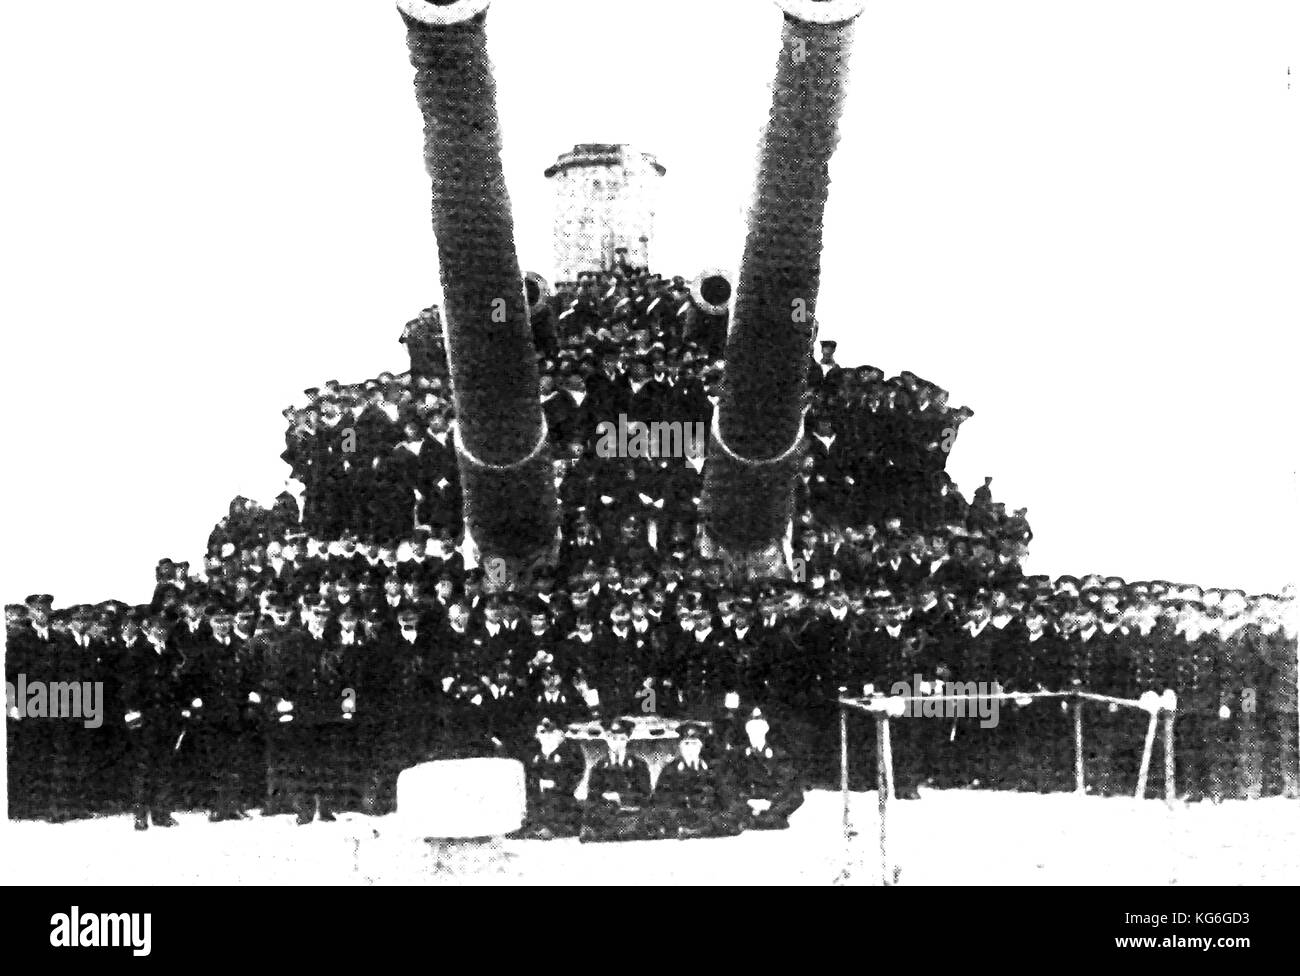 1919 Die Offiziere und Besatzung eines britischen Kriegsschiff posieren für ein Sieg Foto am Ende des Ersten Weltkriegs Stockfoto